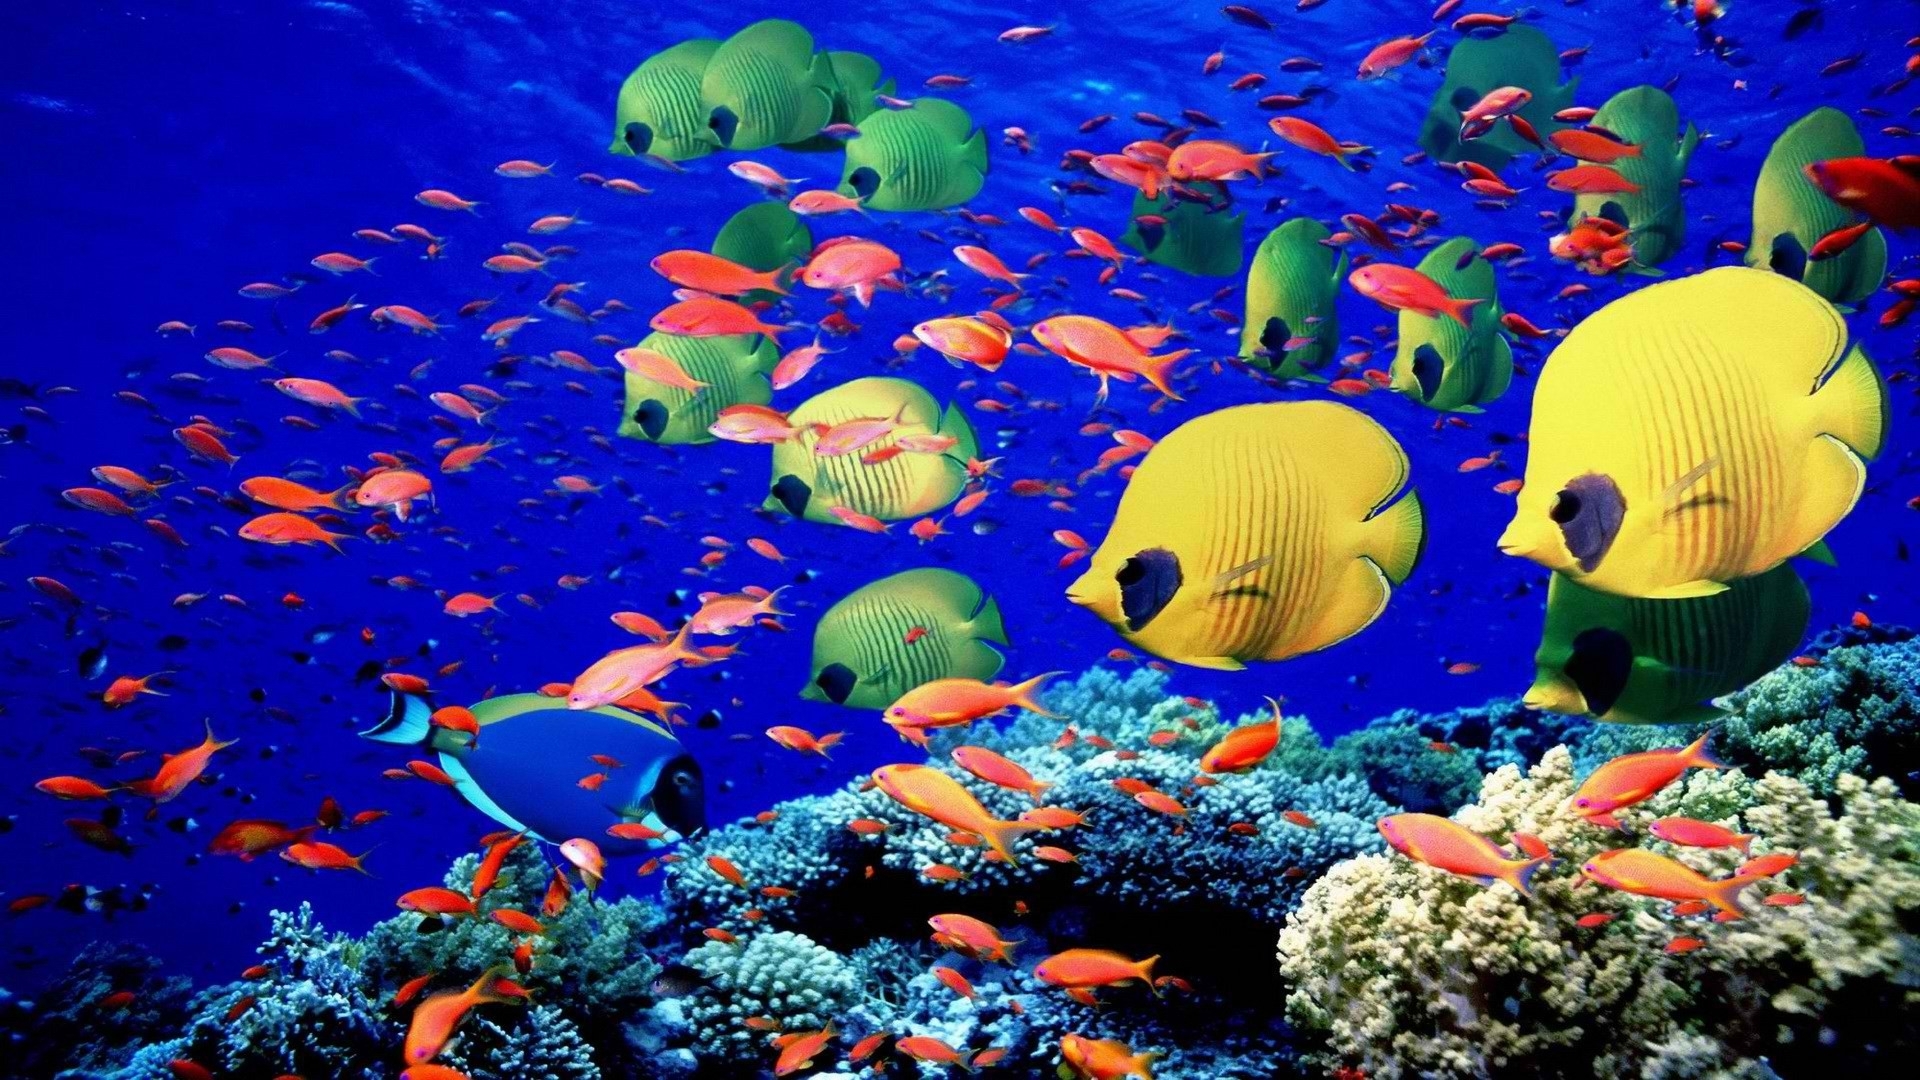 Coral Reef Aquarium 3d Animated Wallpaper Image Num 62